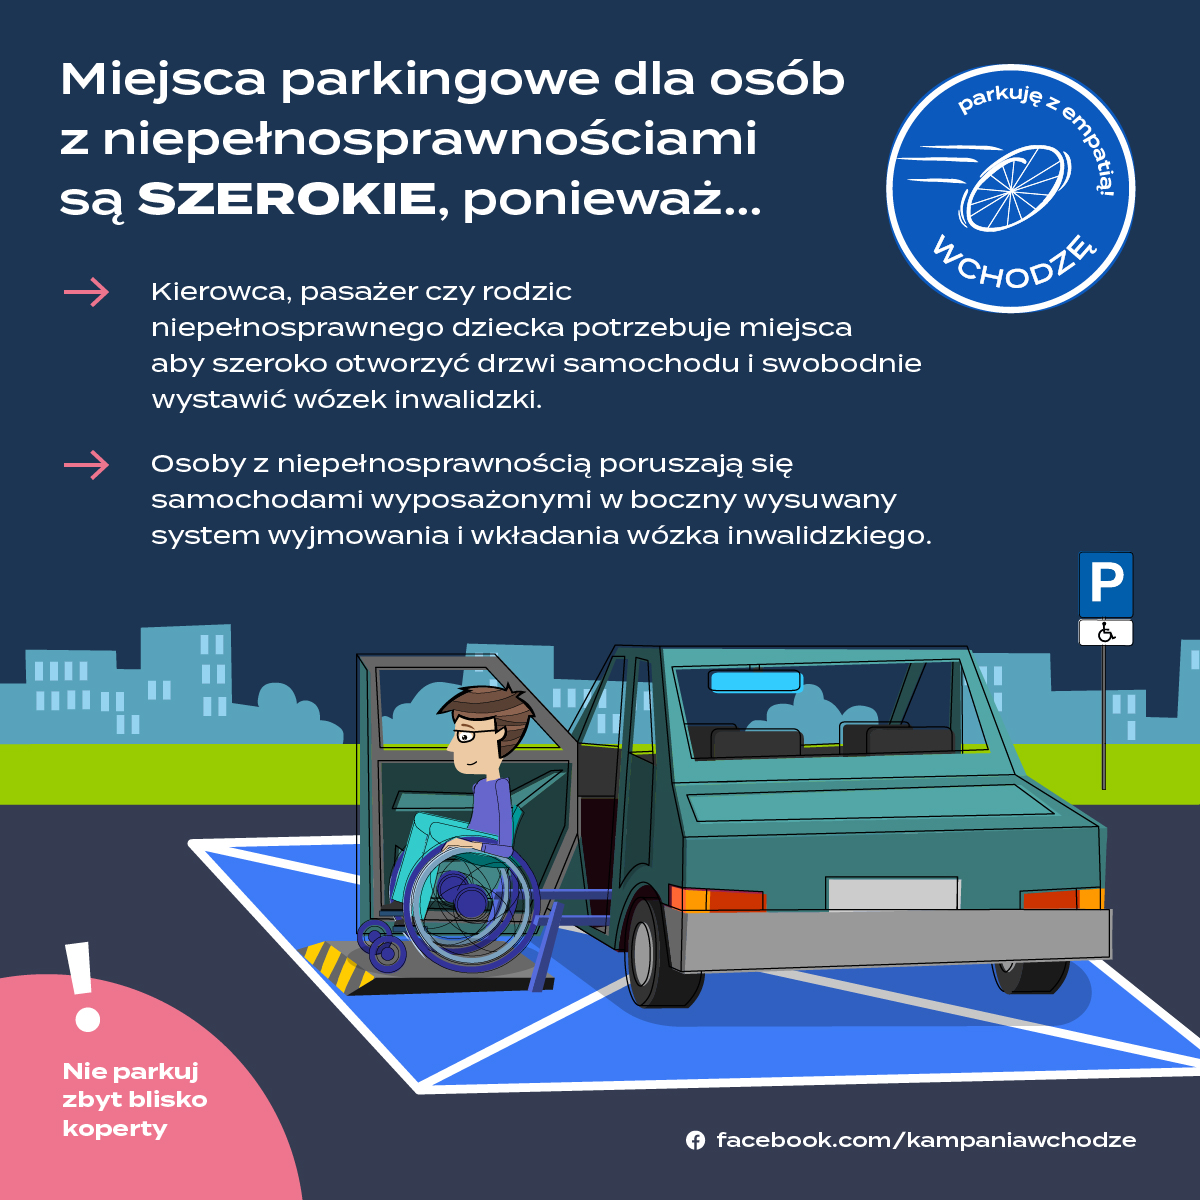 Miejsca przeznaczone dla osób z niepełnosprawnością są szerokie, ponieważ: kierowca, pasażer czy rodzic niepełnosprawnego dziecka potrzebuje miejsca, aby szeroko otworzyć drzwi samochodu i swobodnie wystawić wózek inwalidzki. Osoby z niepełnosprawnością poruszają się samochodami wyposażonymi w boczny wysuwany system wyjmowania i wkładania wózka inwalidzkiego. Nie parkuj zbyt blisko koperty. Mat. prasowe kampanii